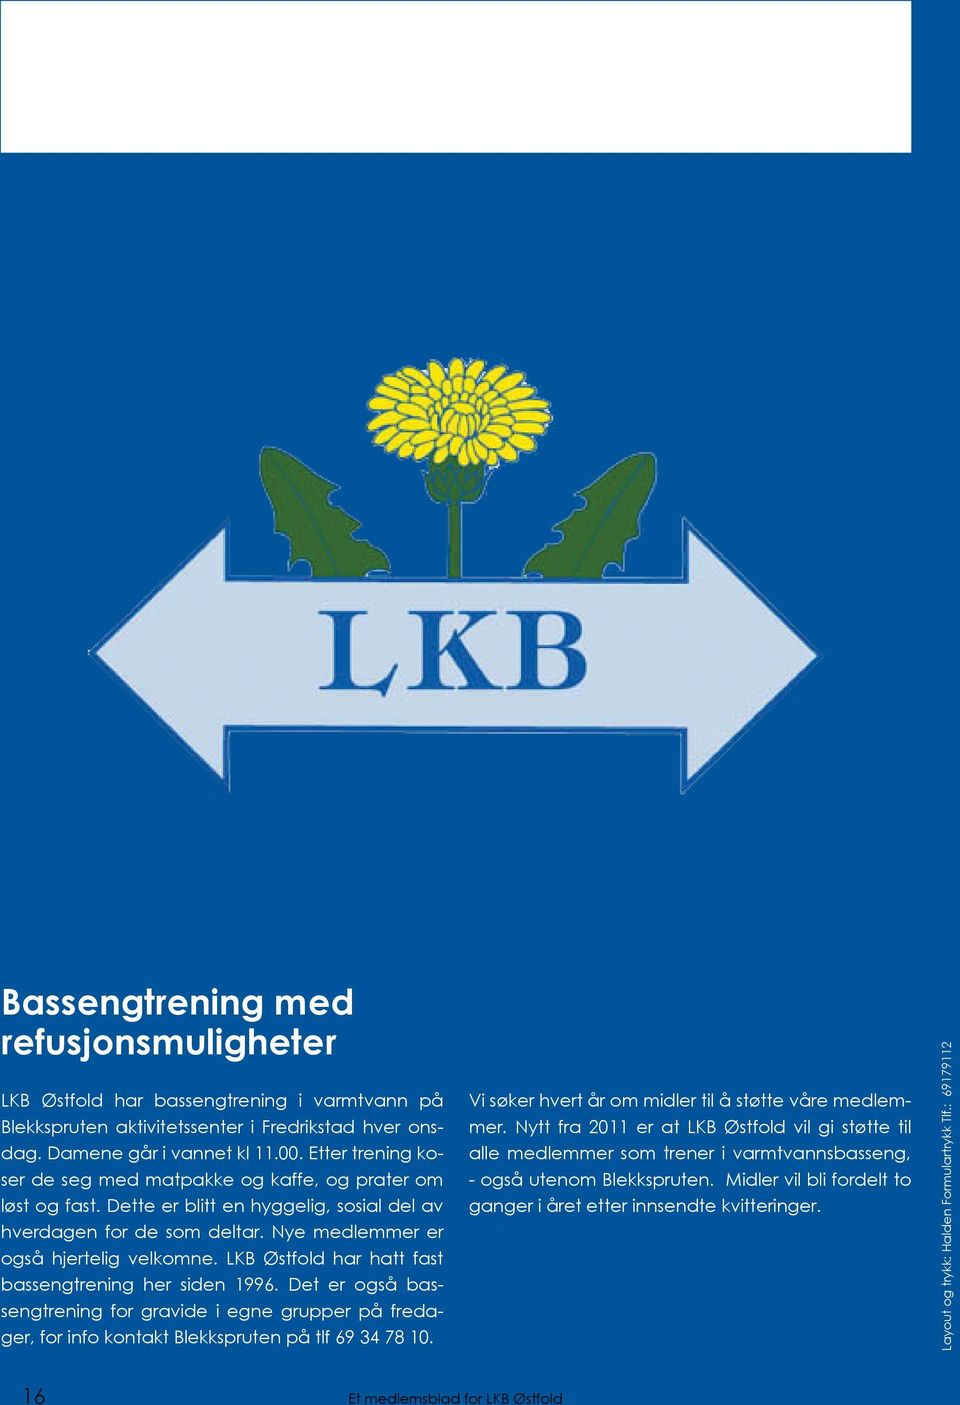 LKB Østfold har hatt fast bassengtrening her siden 1996. Det er også bassengtrening for gravide i egne grupper på fredager, for info kontakt Blekkspruten på tlf 69 34 78 10.